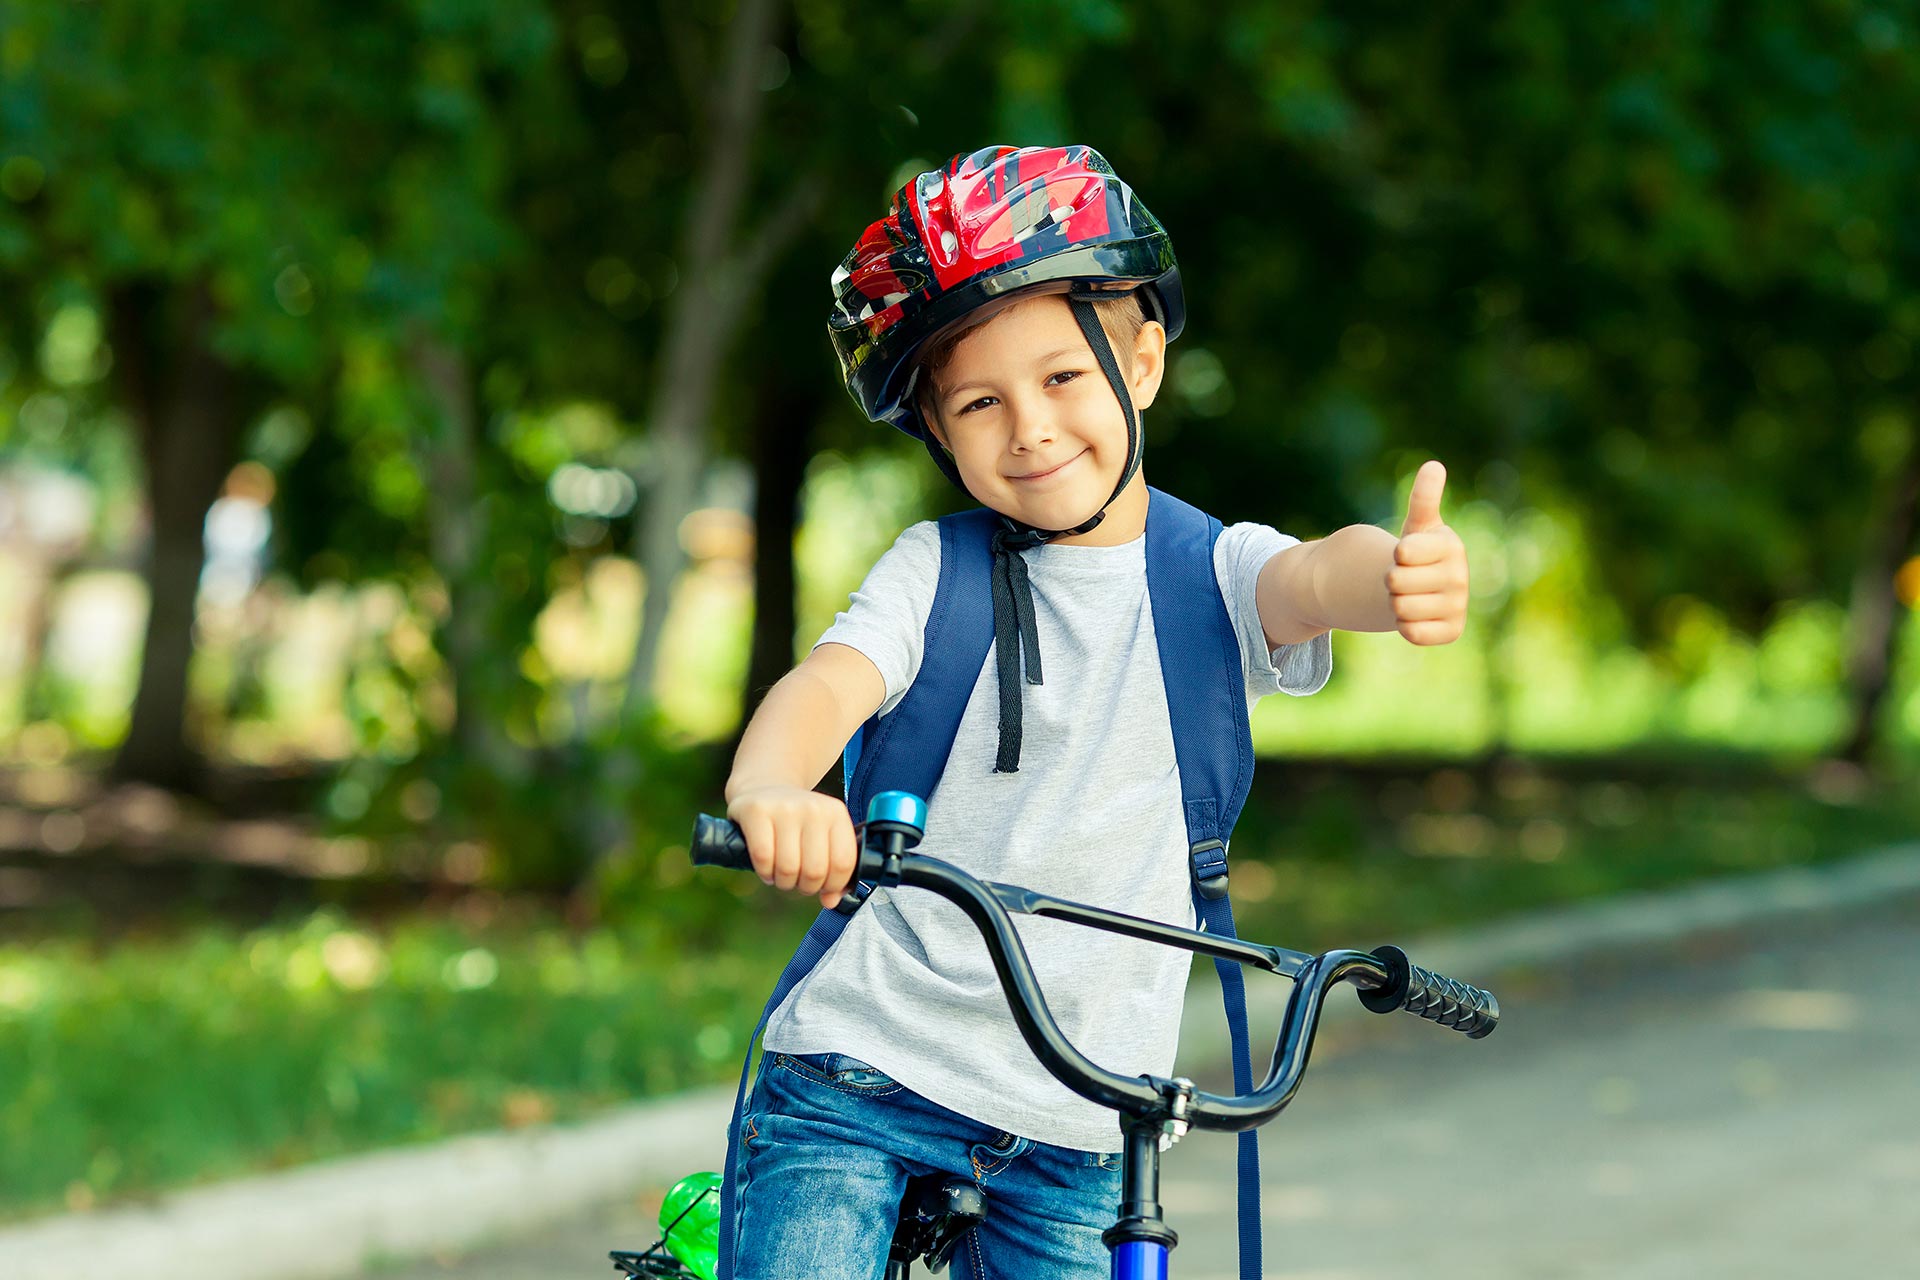 À vélo, le casque est obligatoire pour les enfants de moins de 12 ans